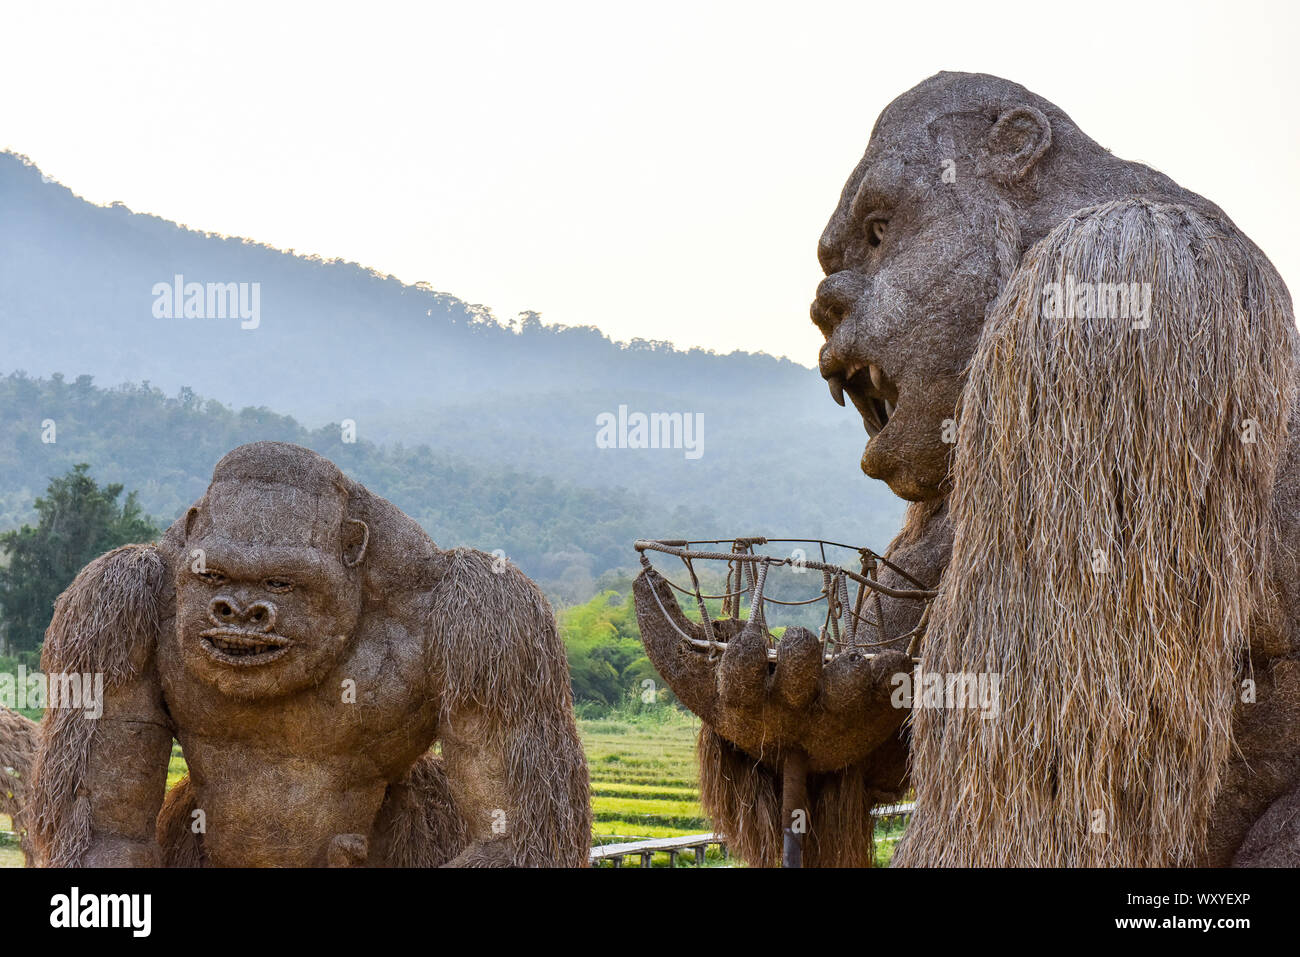 Sculptures de paille géante , Lac Huay Tung Tao, Thaïlande Banque D'Images